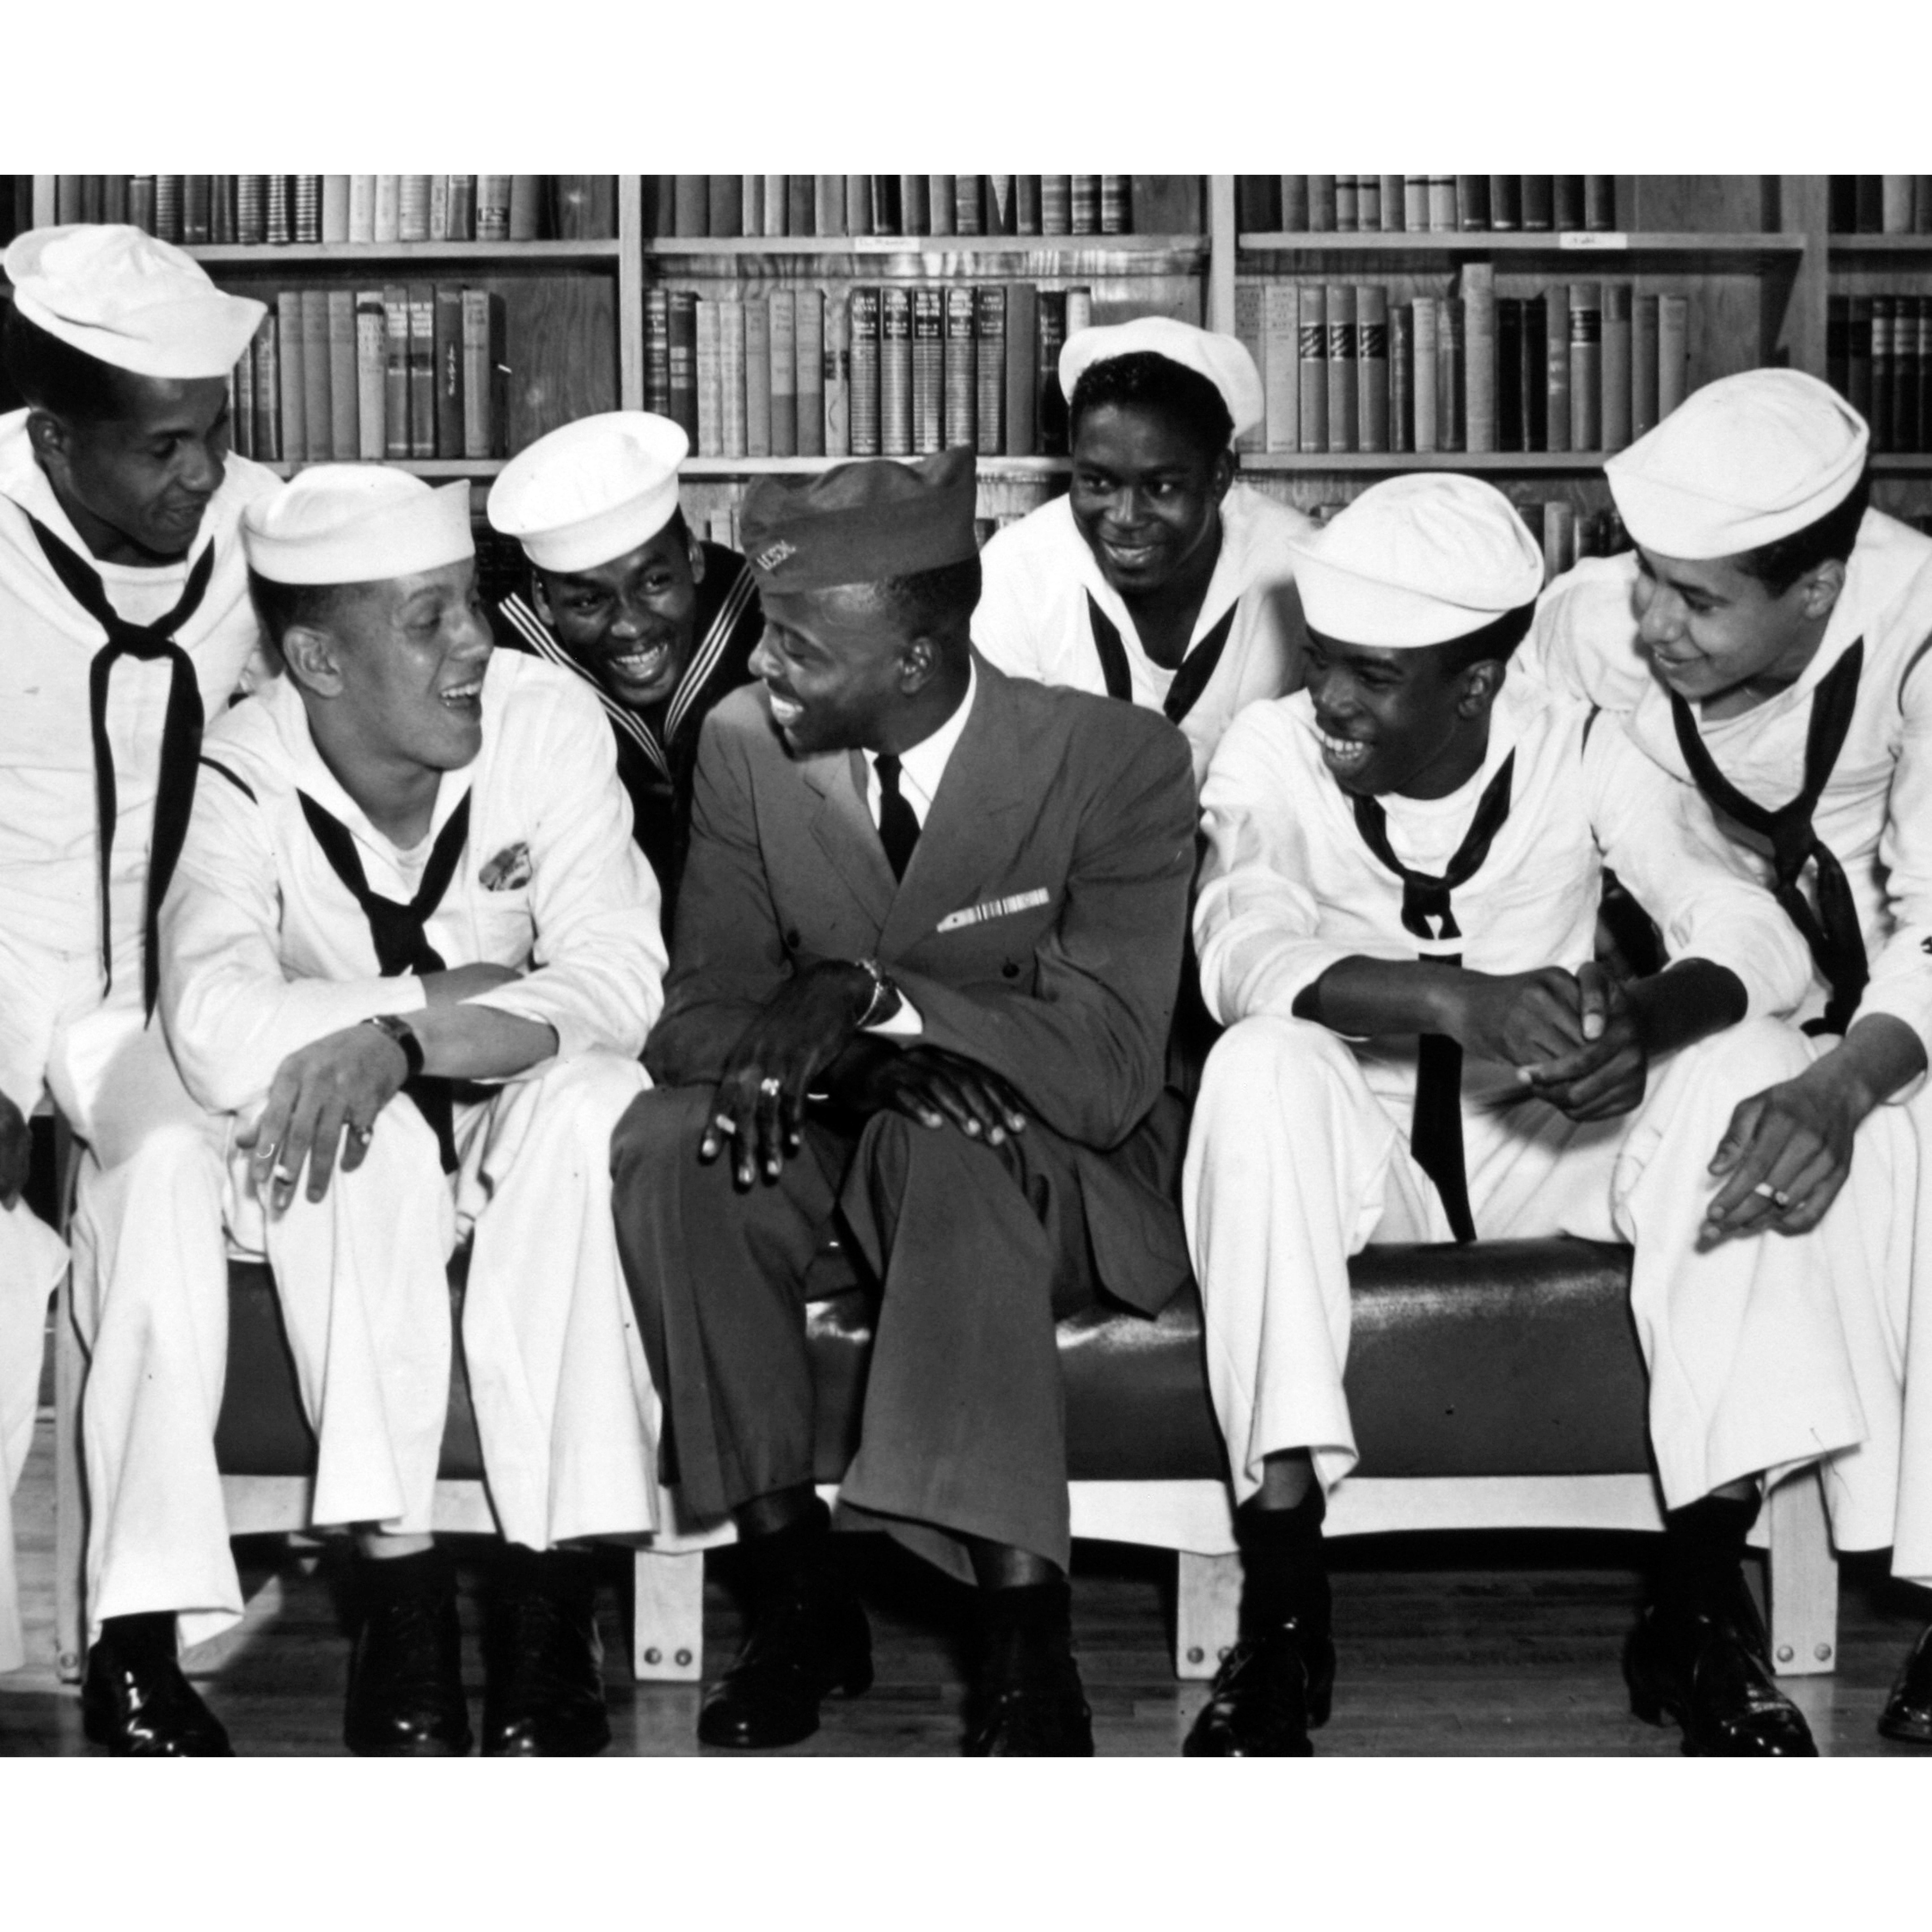 Vintage Black Sailor Photos In Honor Of Fleet Week